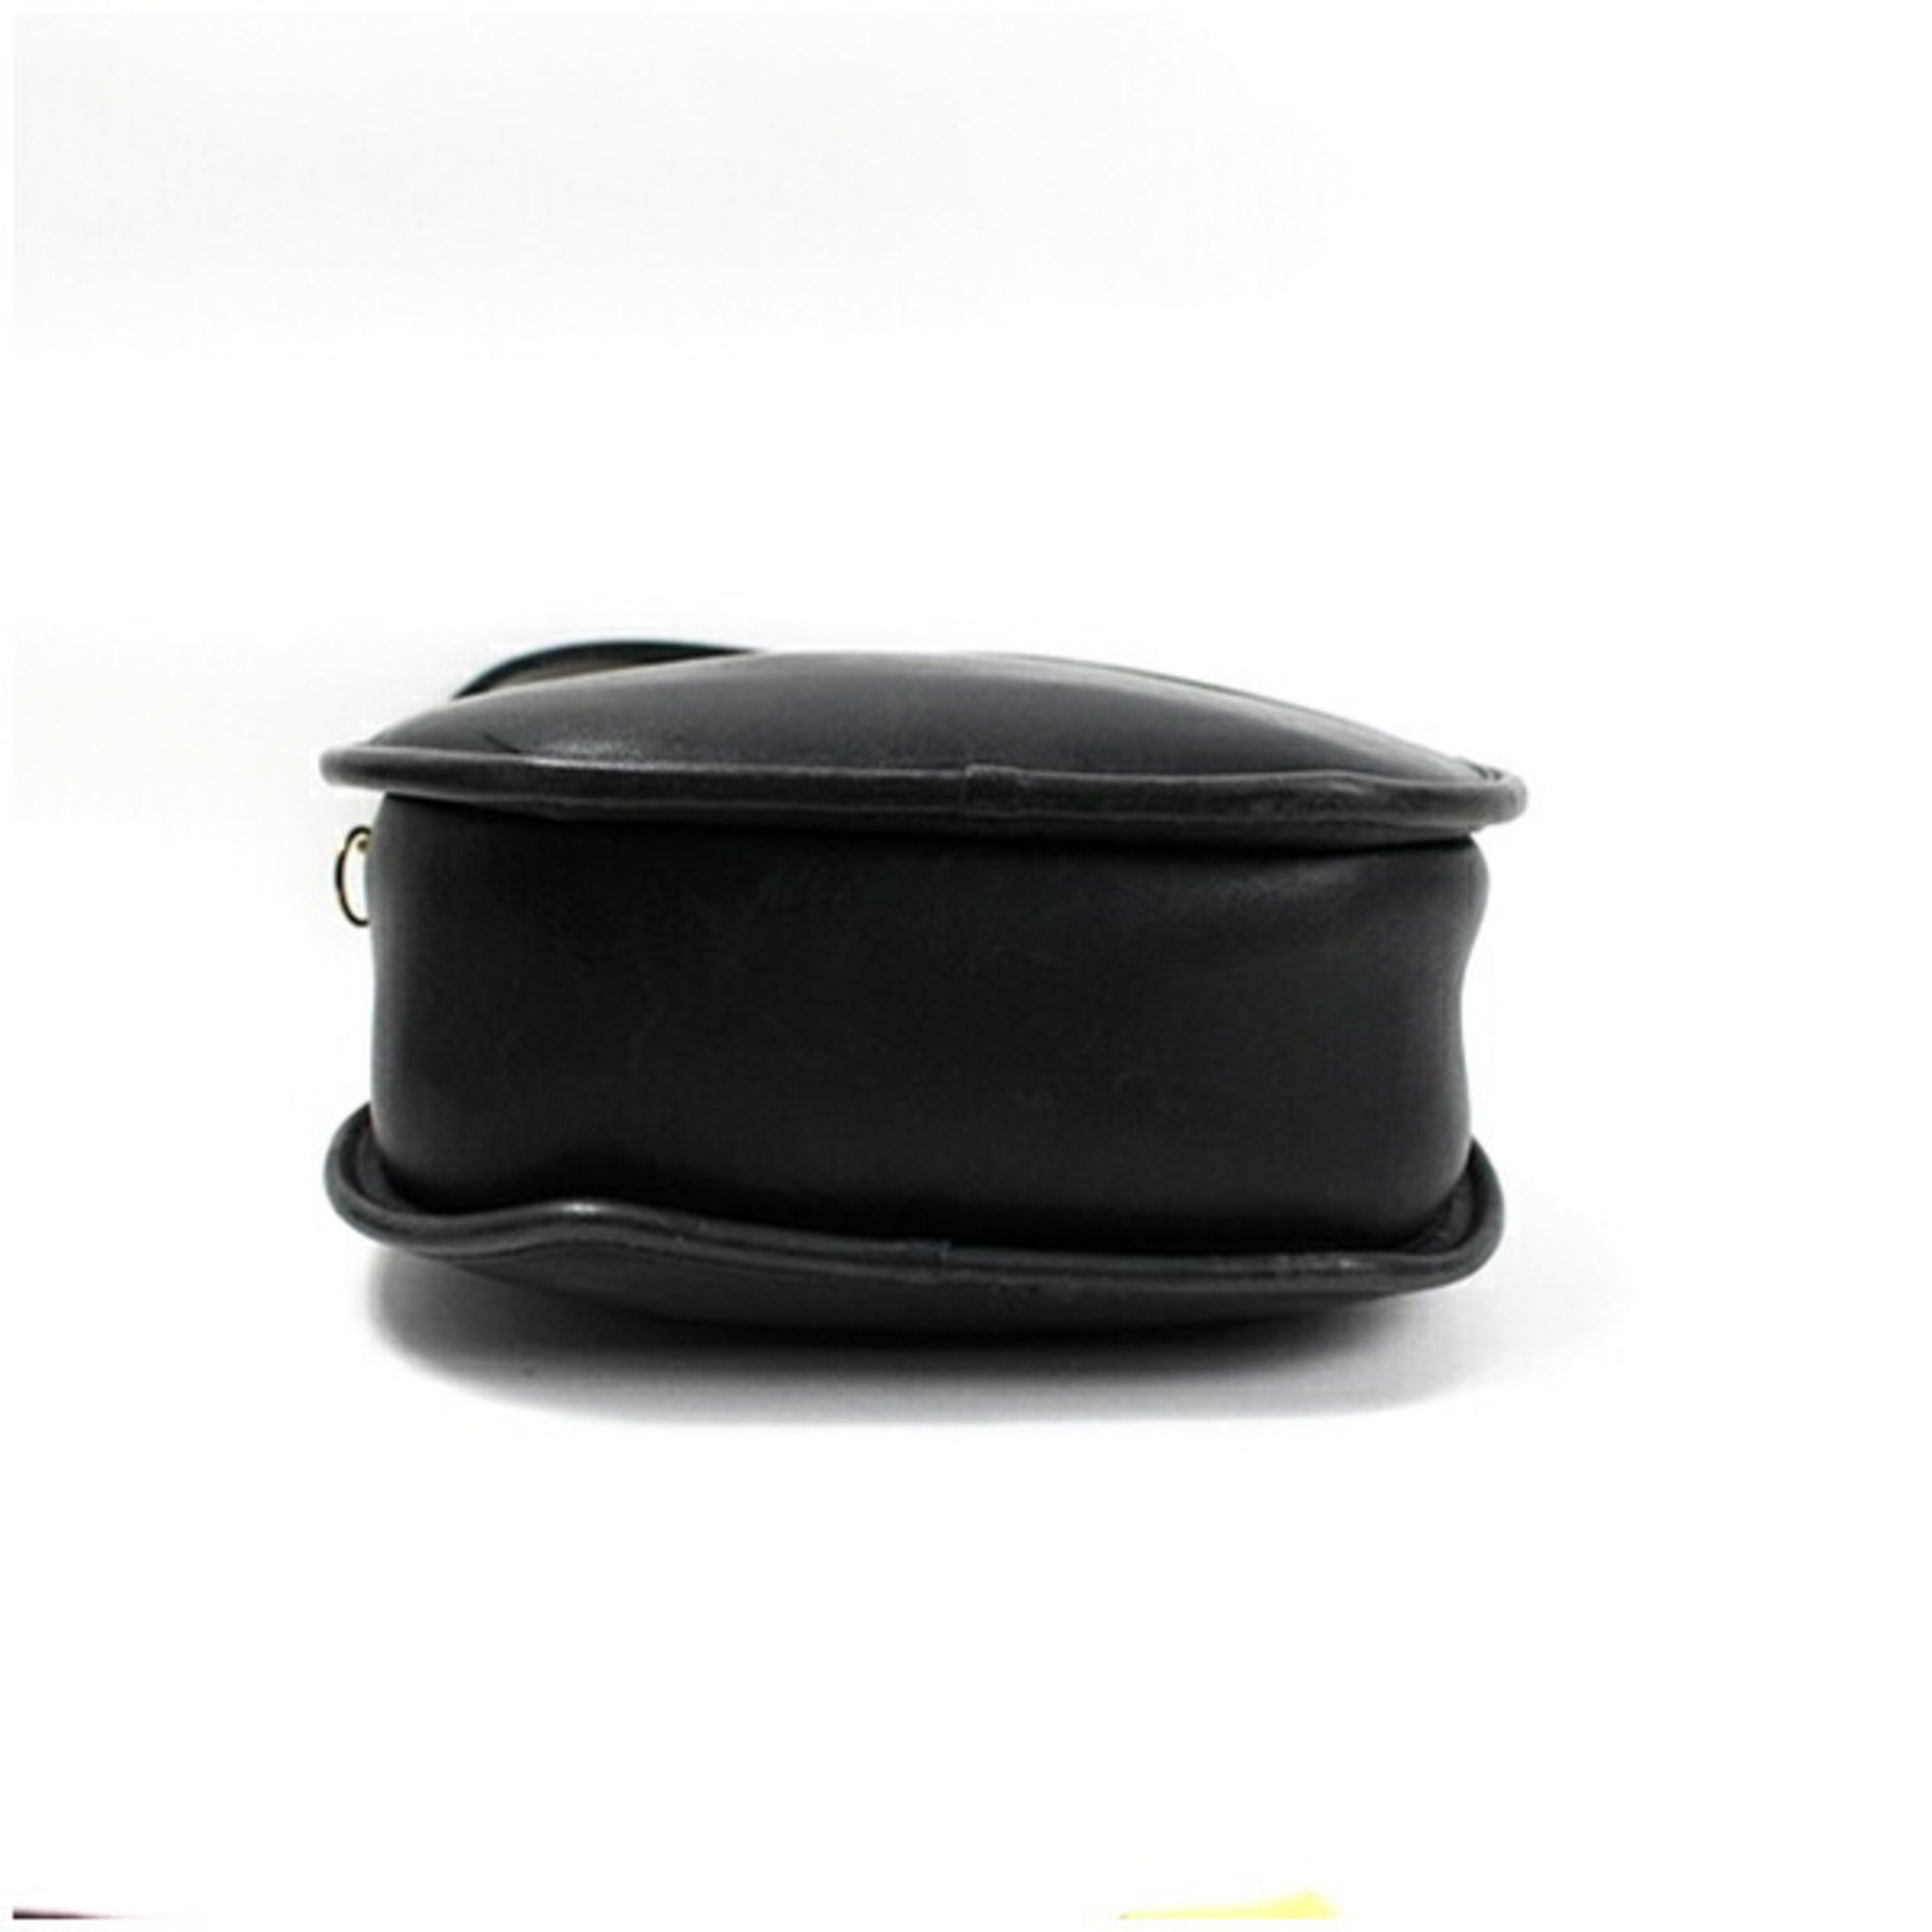 Coach shoulder bag all leather black E4C 9901 COACH women's pochette